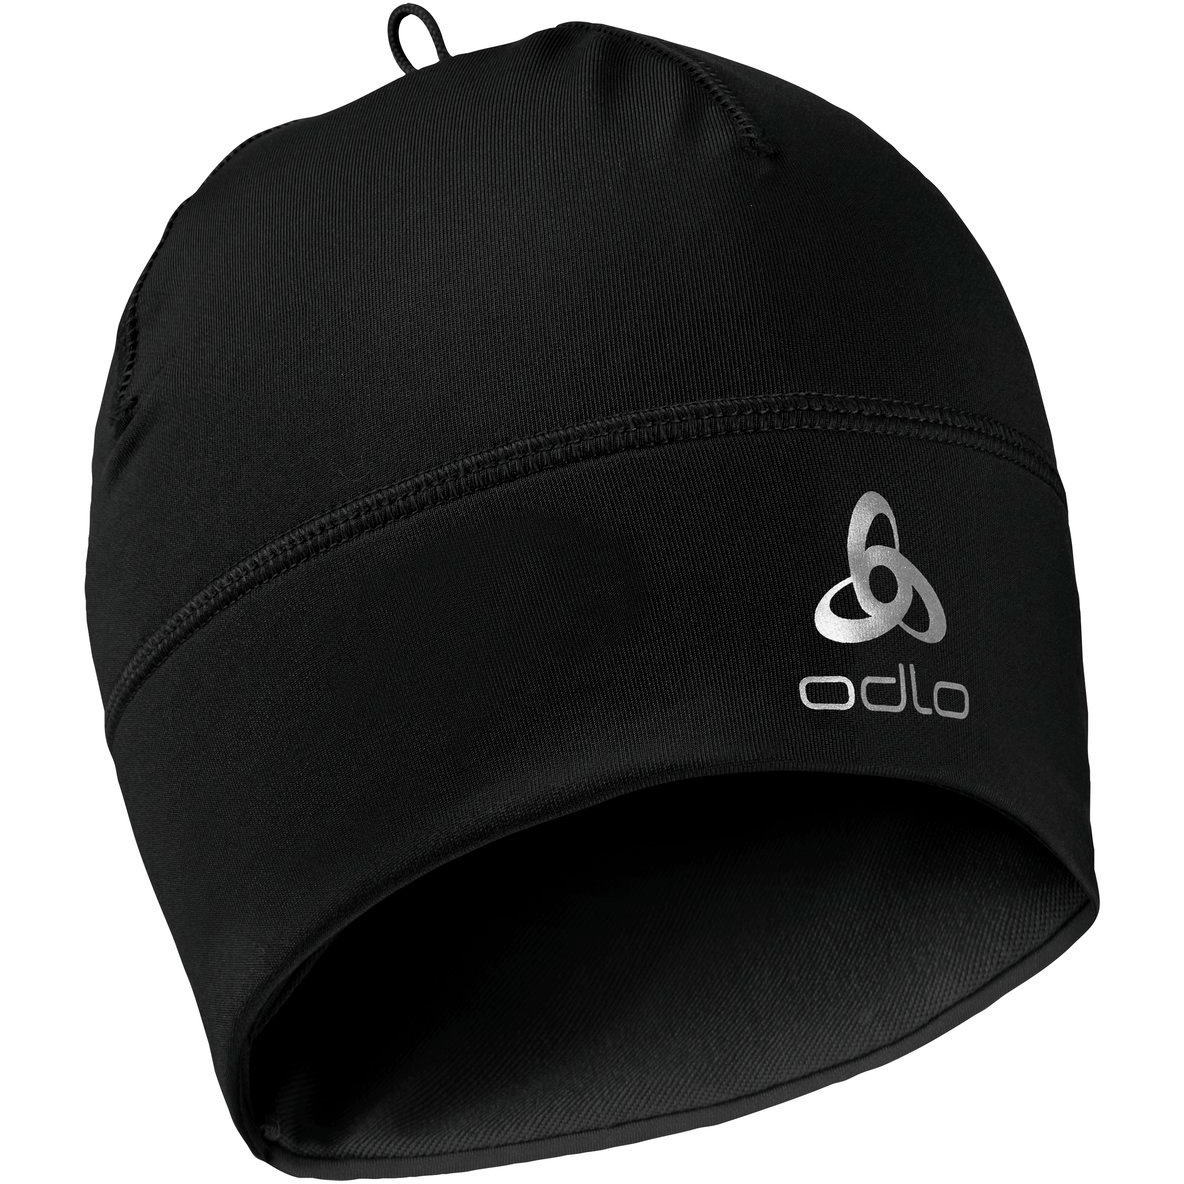 Produktbild von Odlo Polyknit Warm ECO Mütze - schwarz